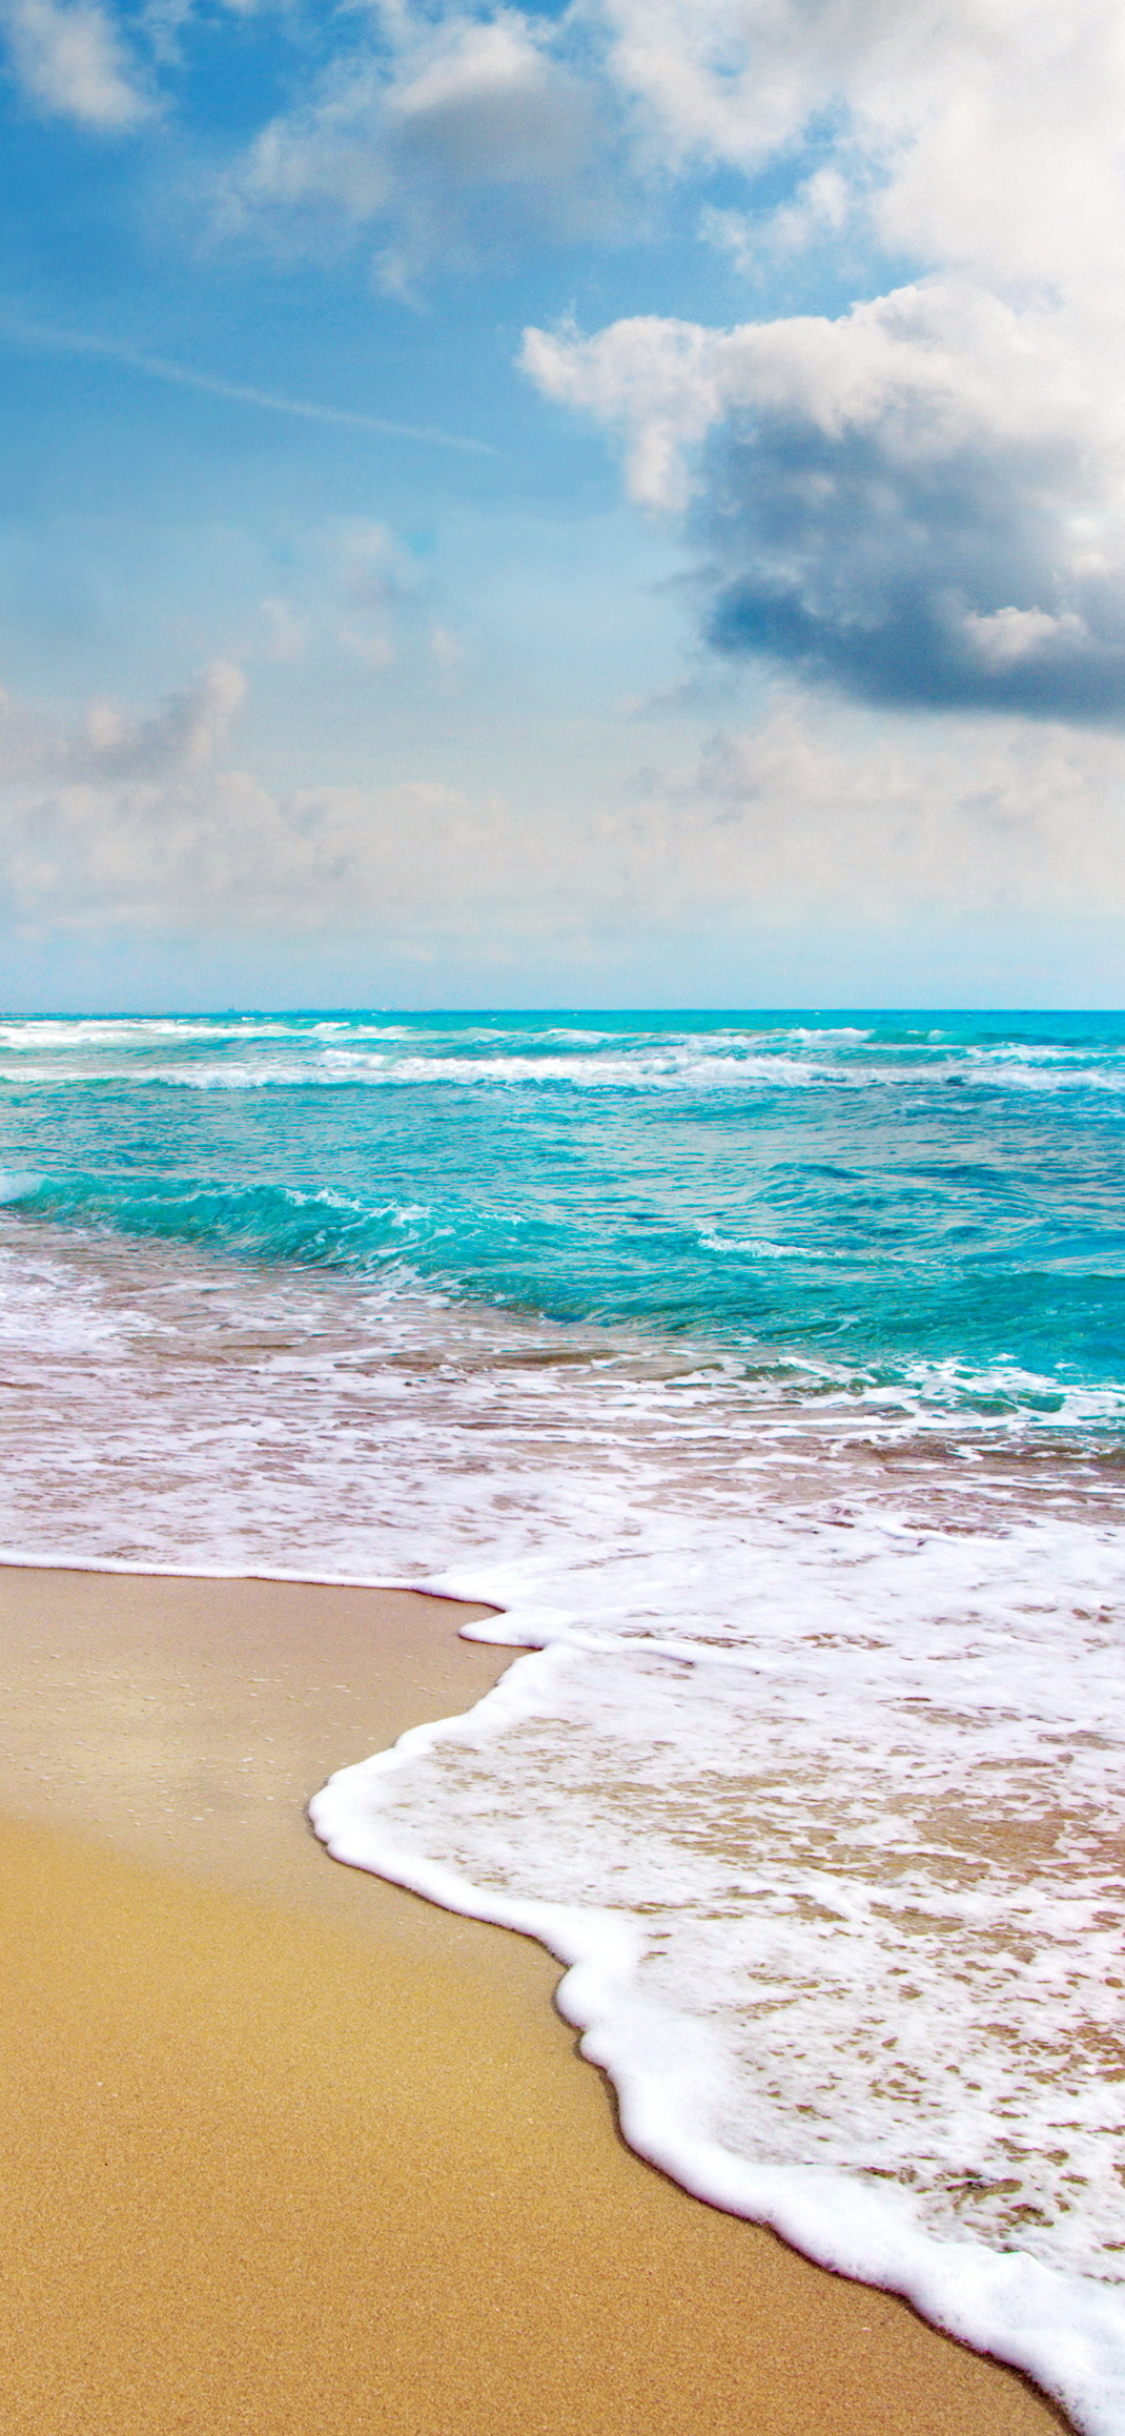 Descarga gratuita de fondo de pantalla para móvil de Mar, Playa, Horizonte, Costa, Océano, Tierra, Tierra/naturaleza.